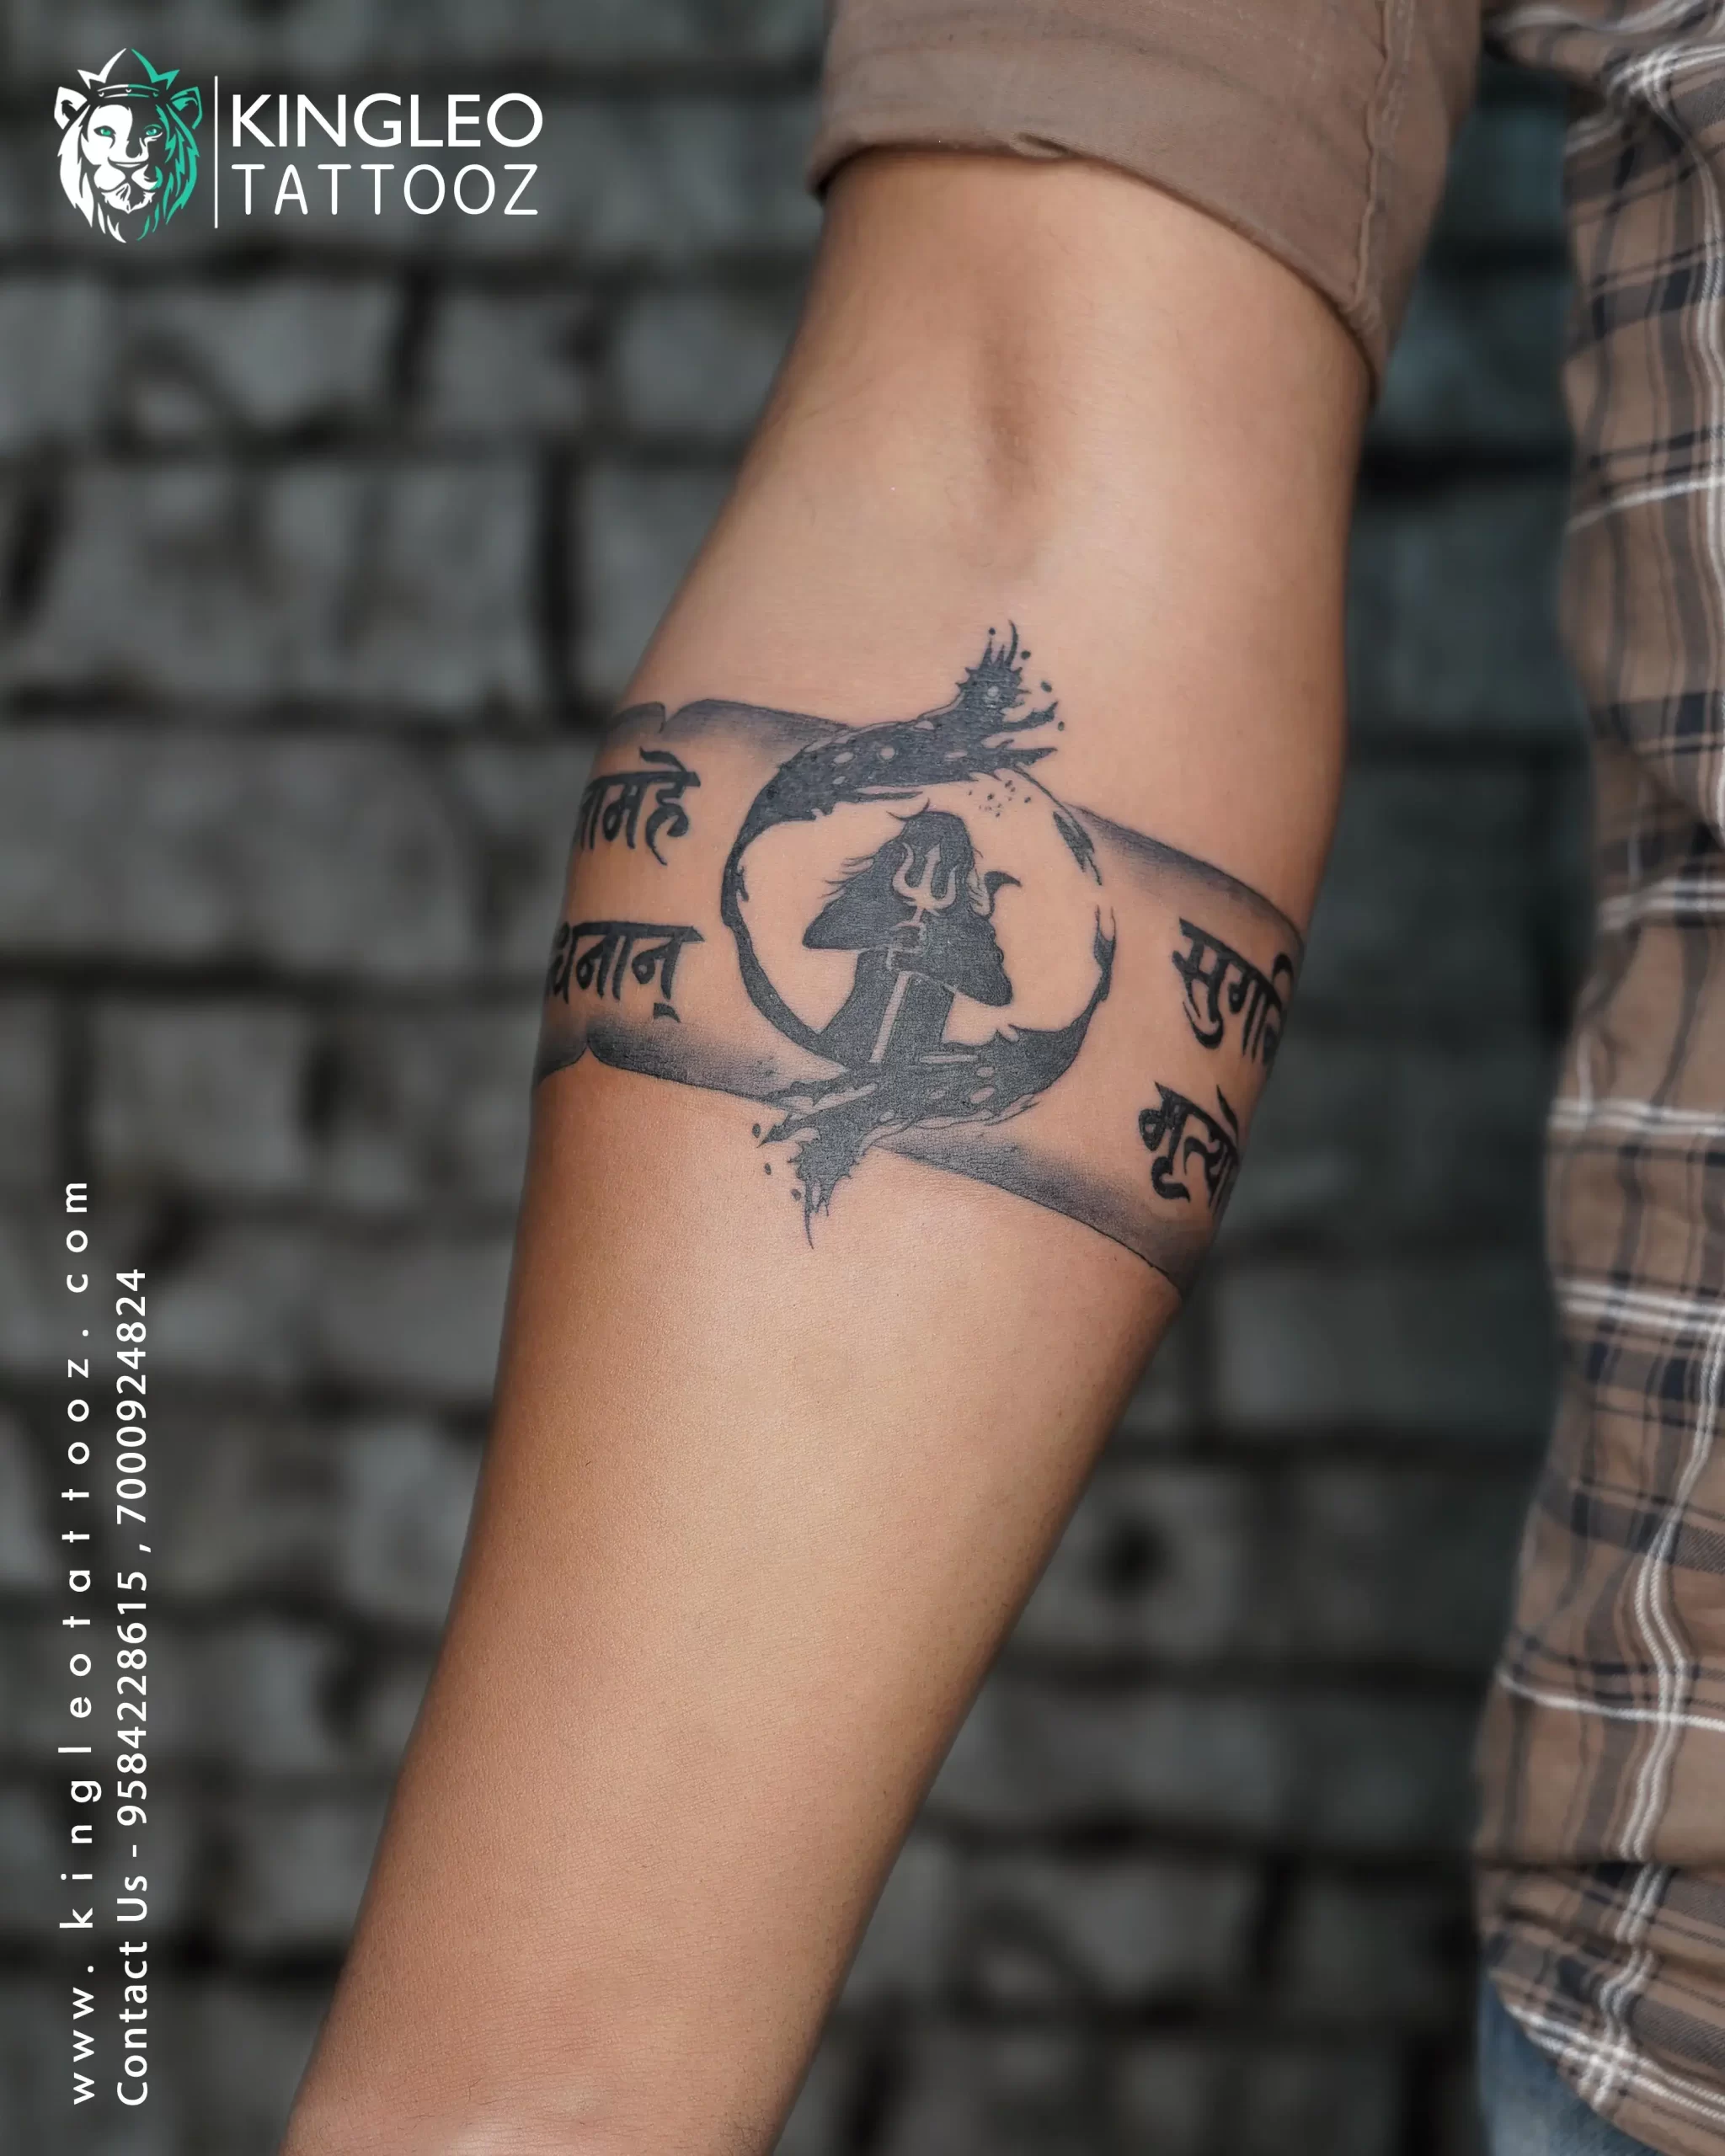 Triangle tattoo,band tattoo idea,belt tattoo,geometric tattoo | Triangle  tattoos, Thigh band tattoo, Band tattoo